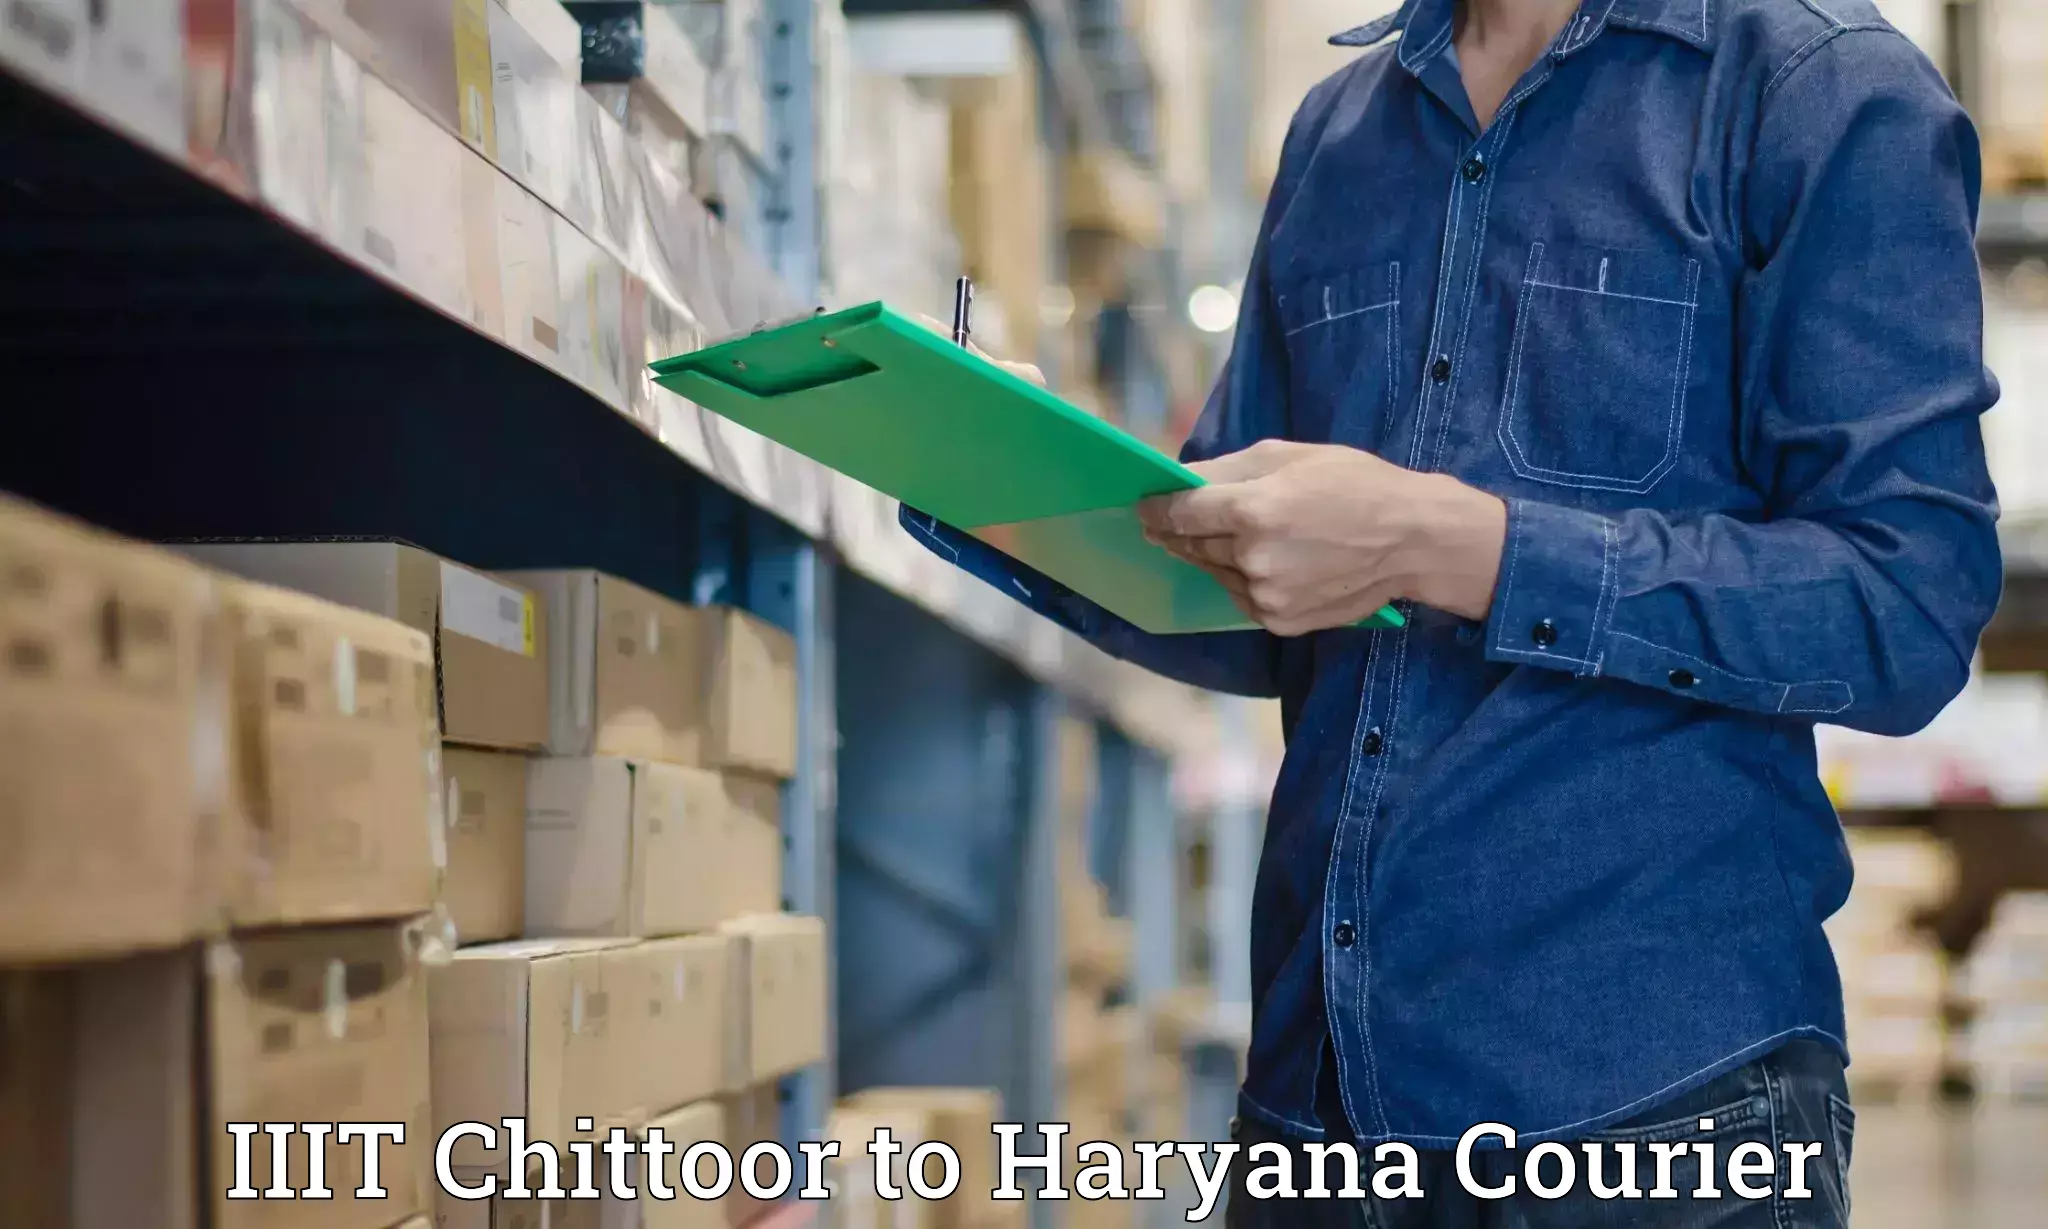 Urgent courier needs IIIT Chittoor to Pataudi